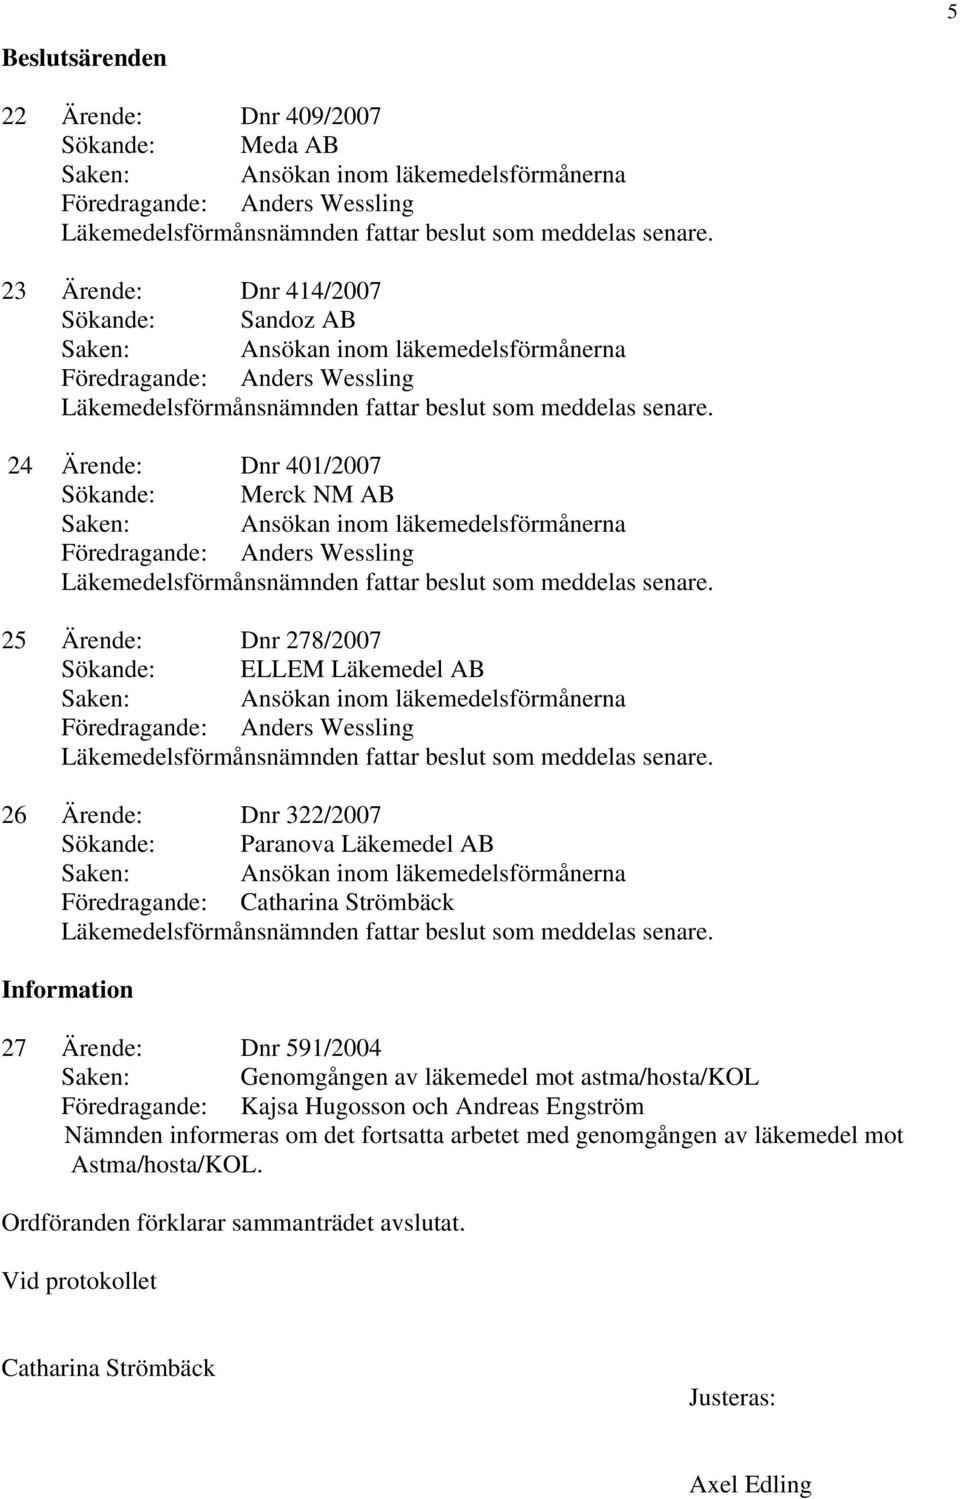 591/2004 Saken: Genomgången av läkemedel mot astma/hosta/kol Föredragande: Kajsa Hugosson och Andreas Engström Nämnden informeras om det fortsatta